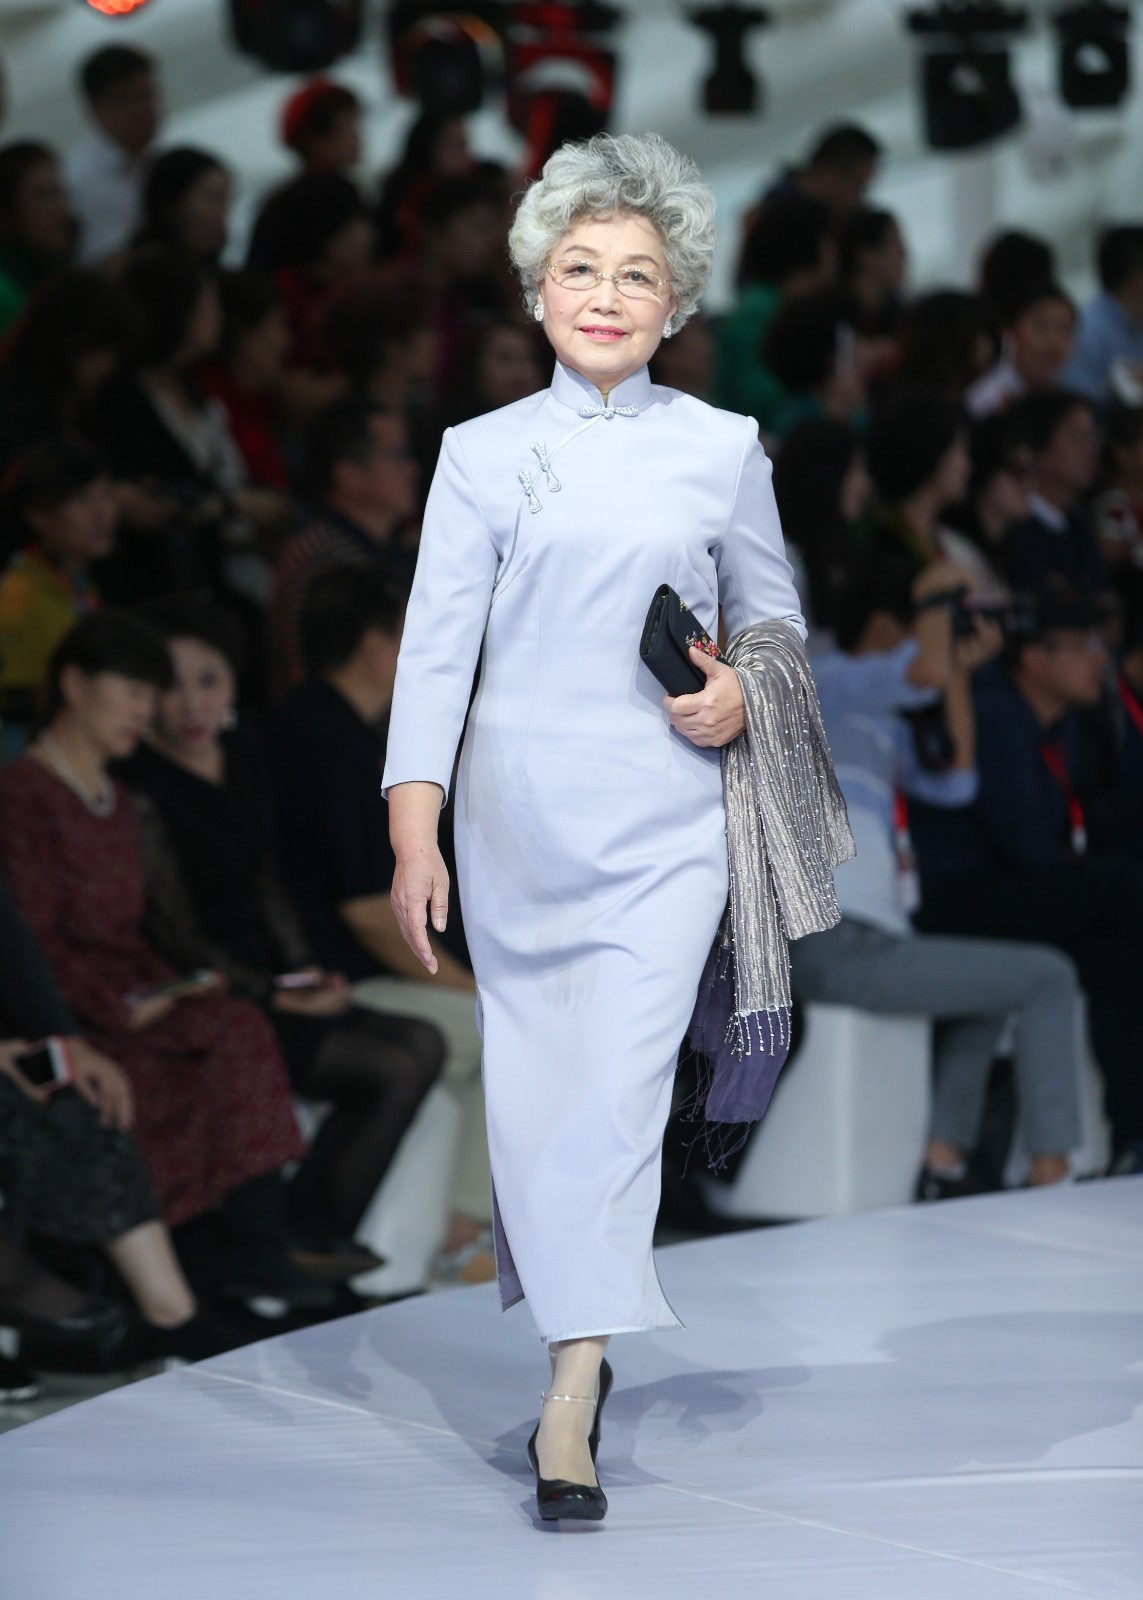 北京市第五届老年节开幕 登台模特最高龄的已有87岁